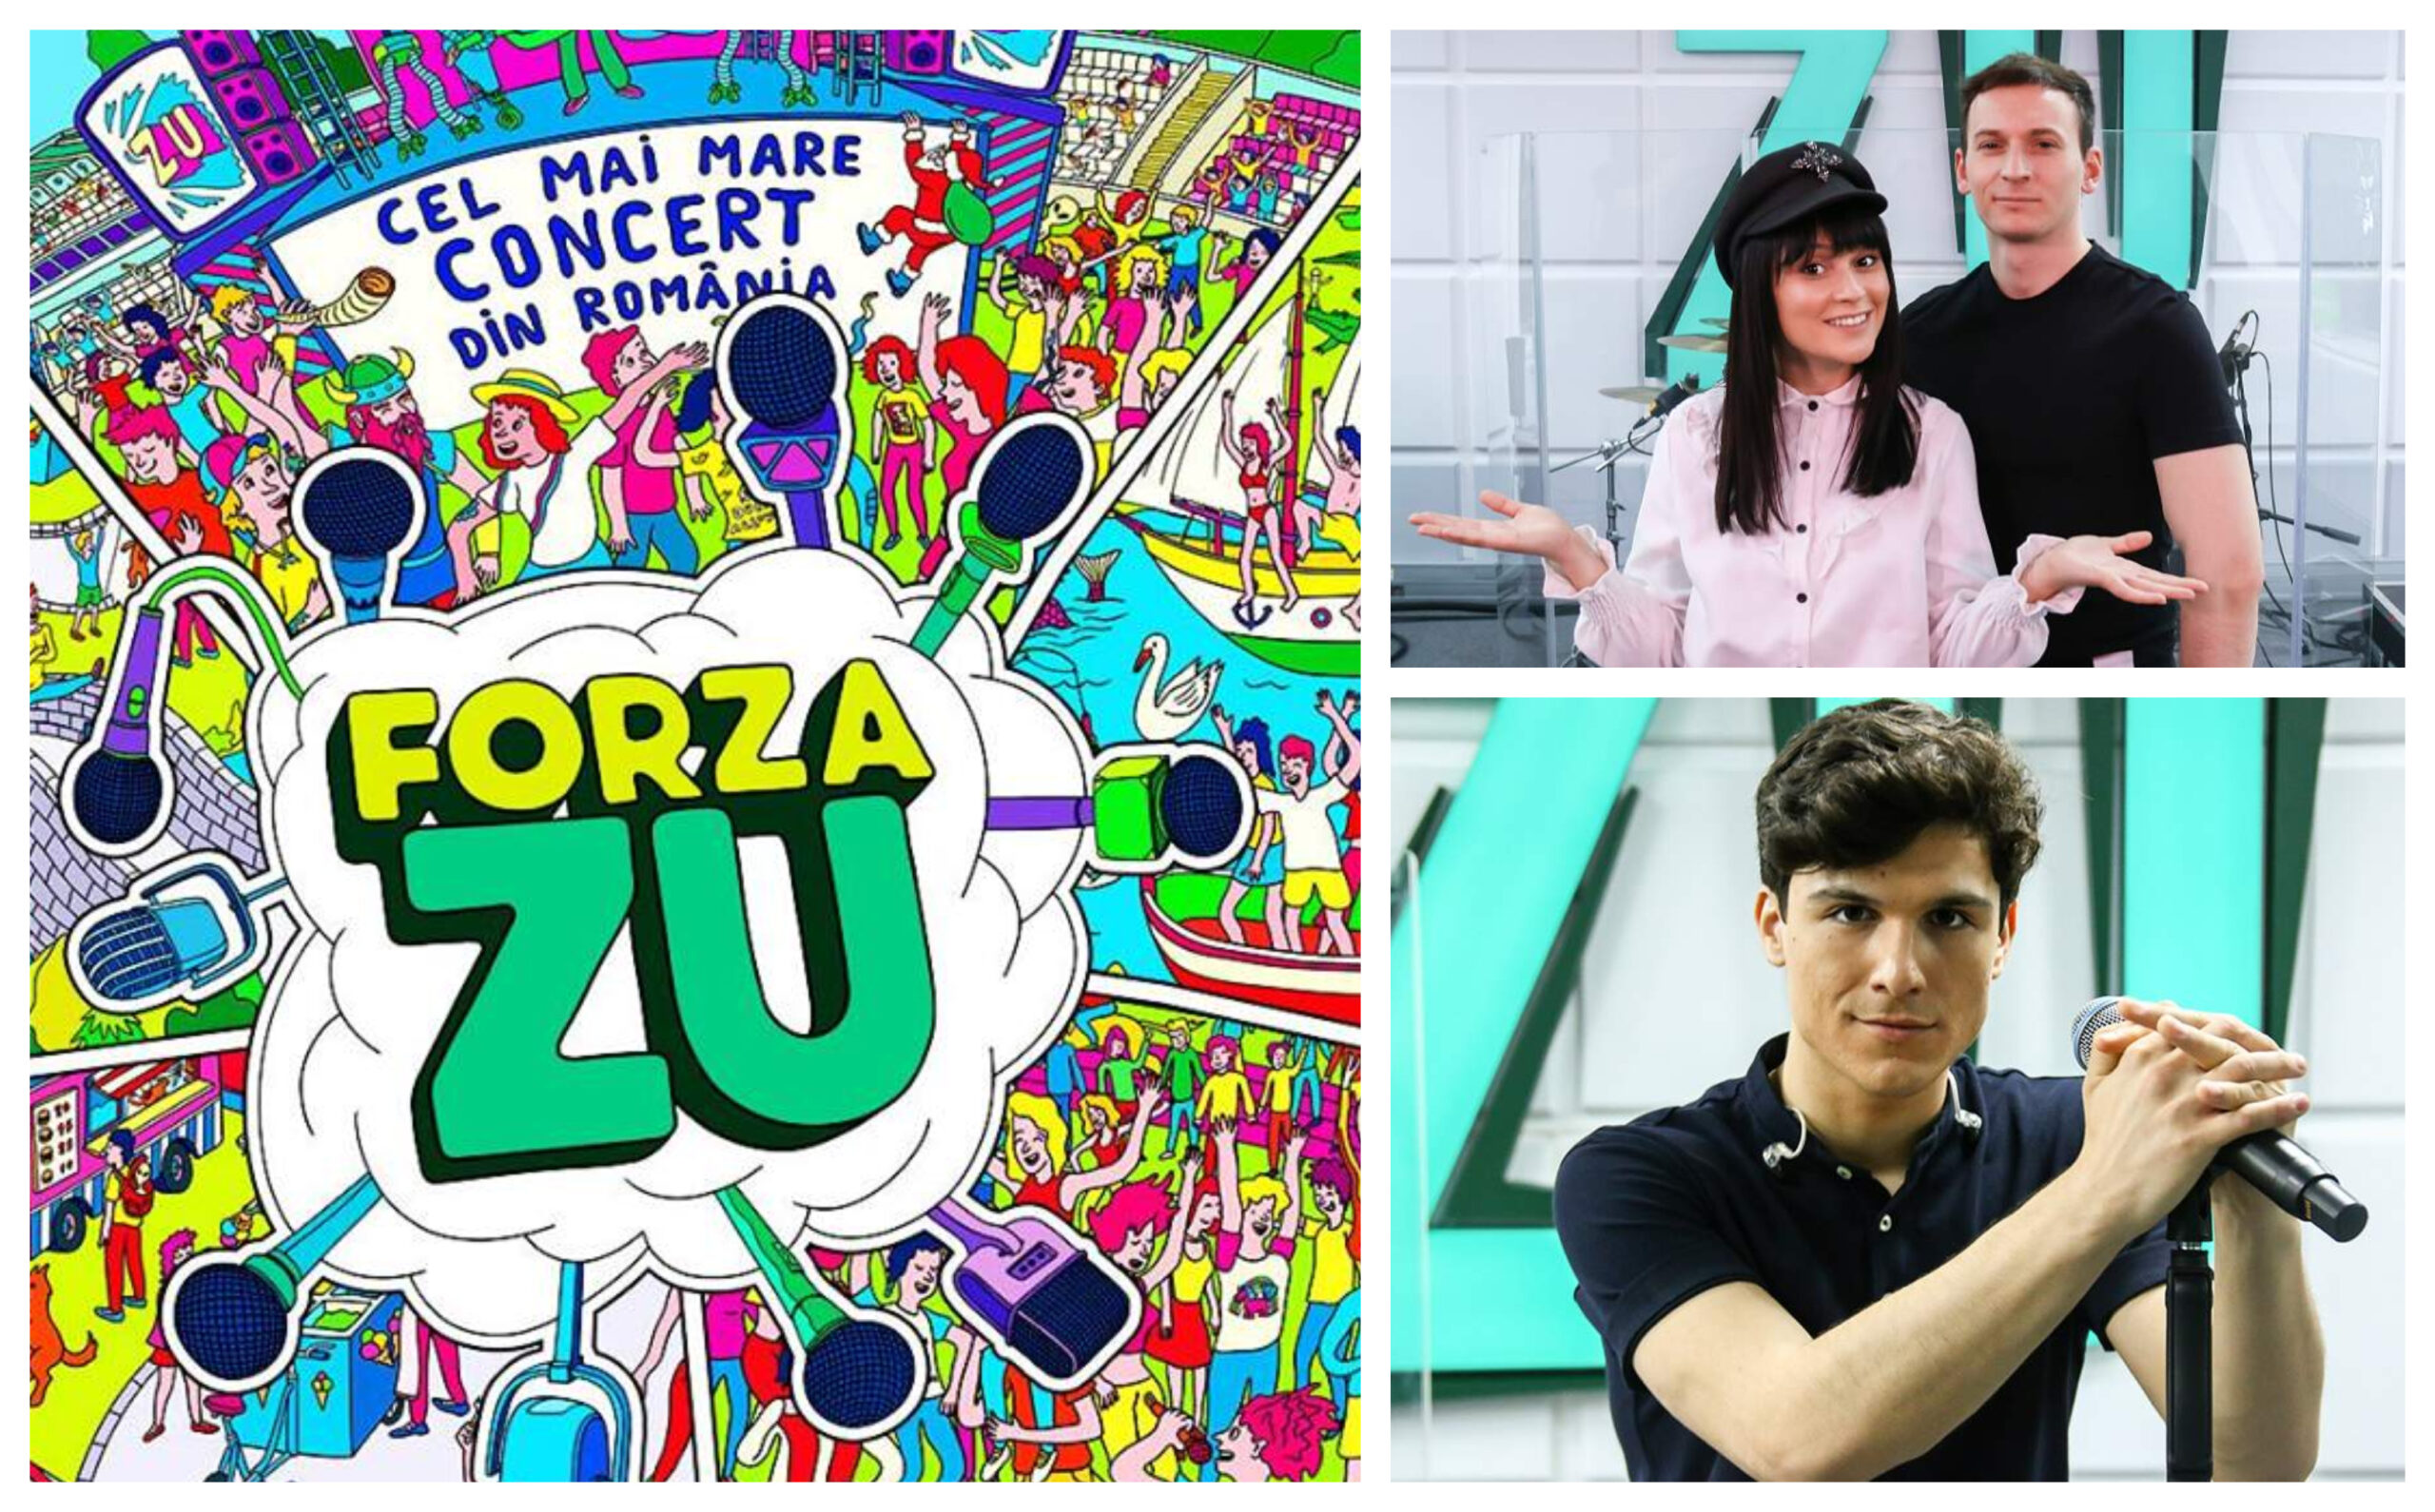 Forza ZU 2019 | Ei sunt artiștii care au confirmat deja prezența la cel mai mare concert din România